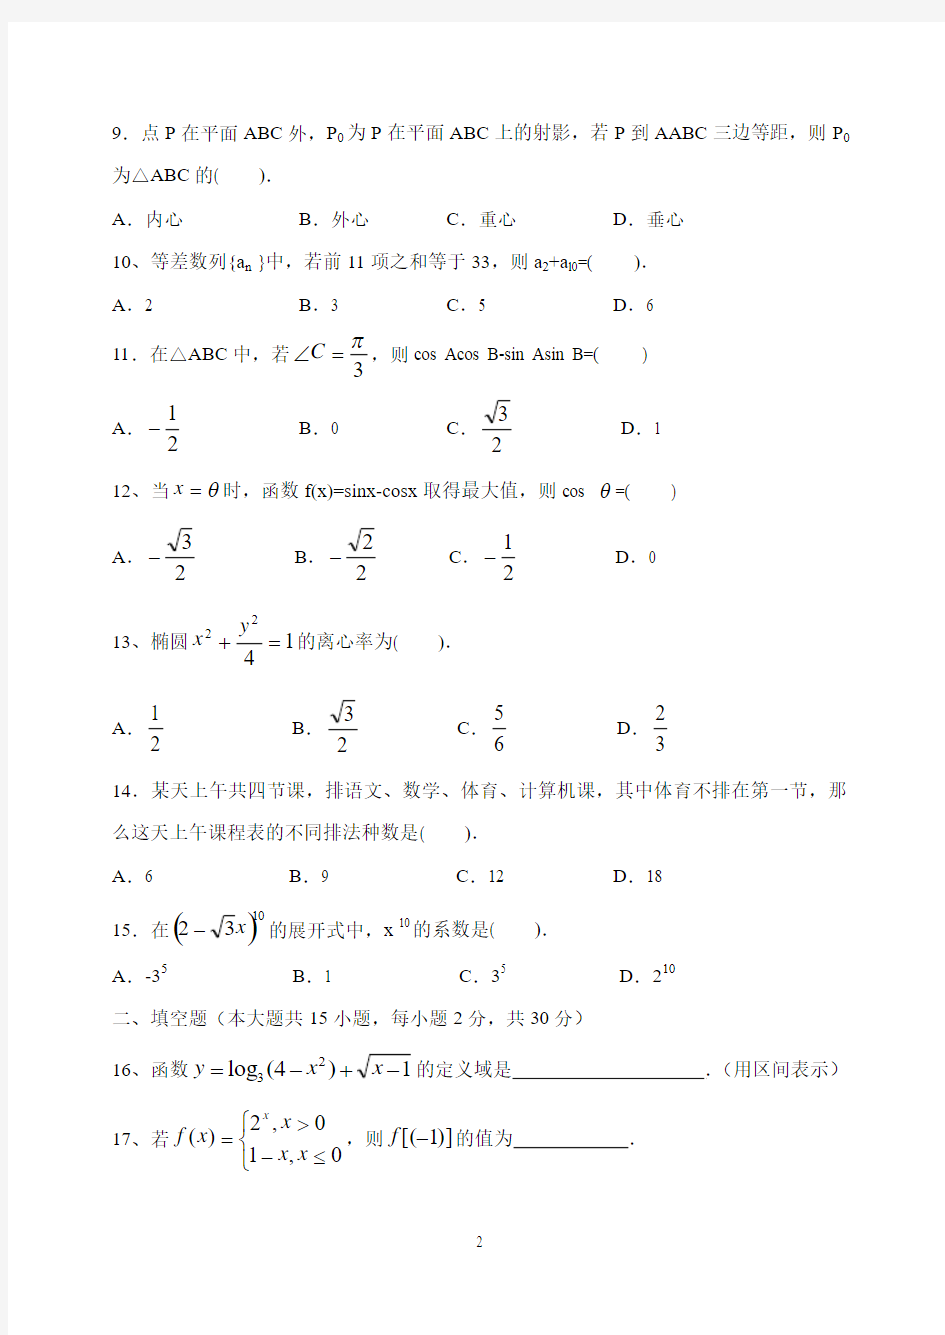 河北省2013年高考对口升学数学试题